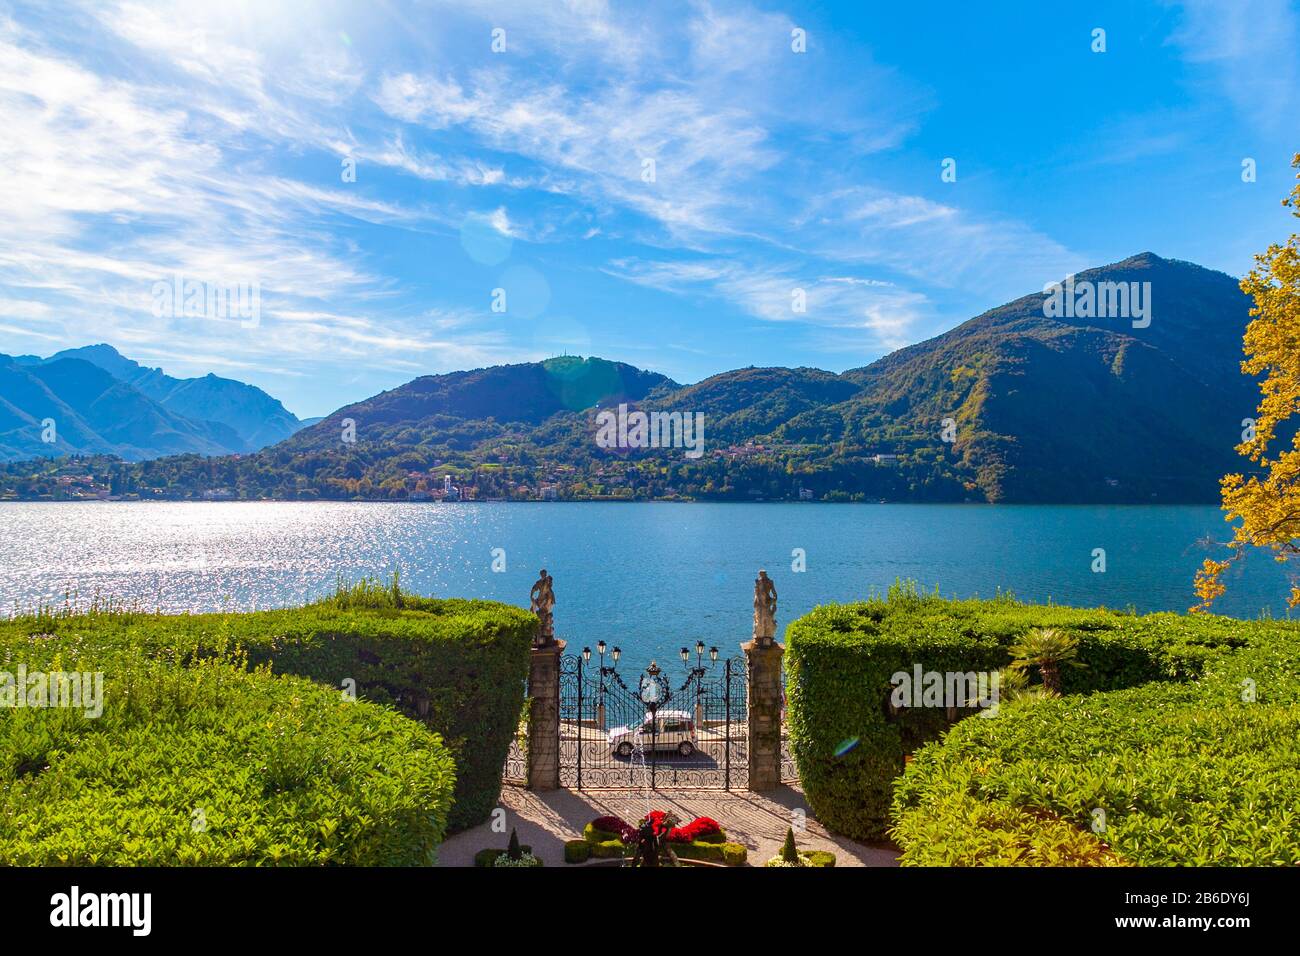 La porte de la Villa Carlotta sur le lac de Côme, Trémezzo, Lombardie, Italie Banque D'Images